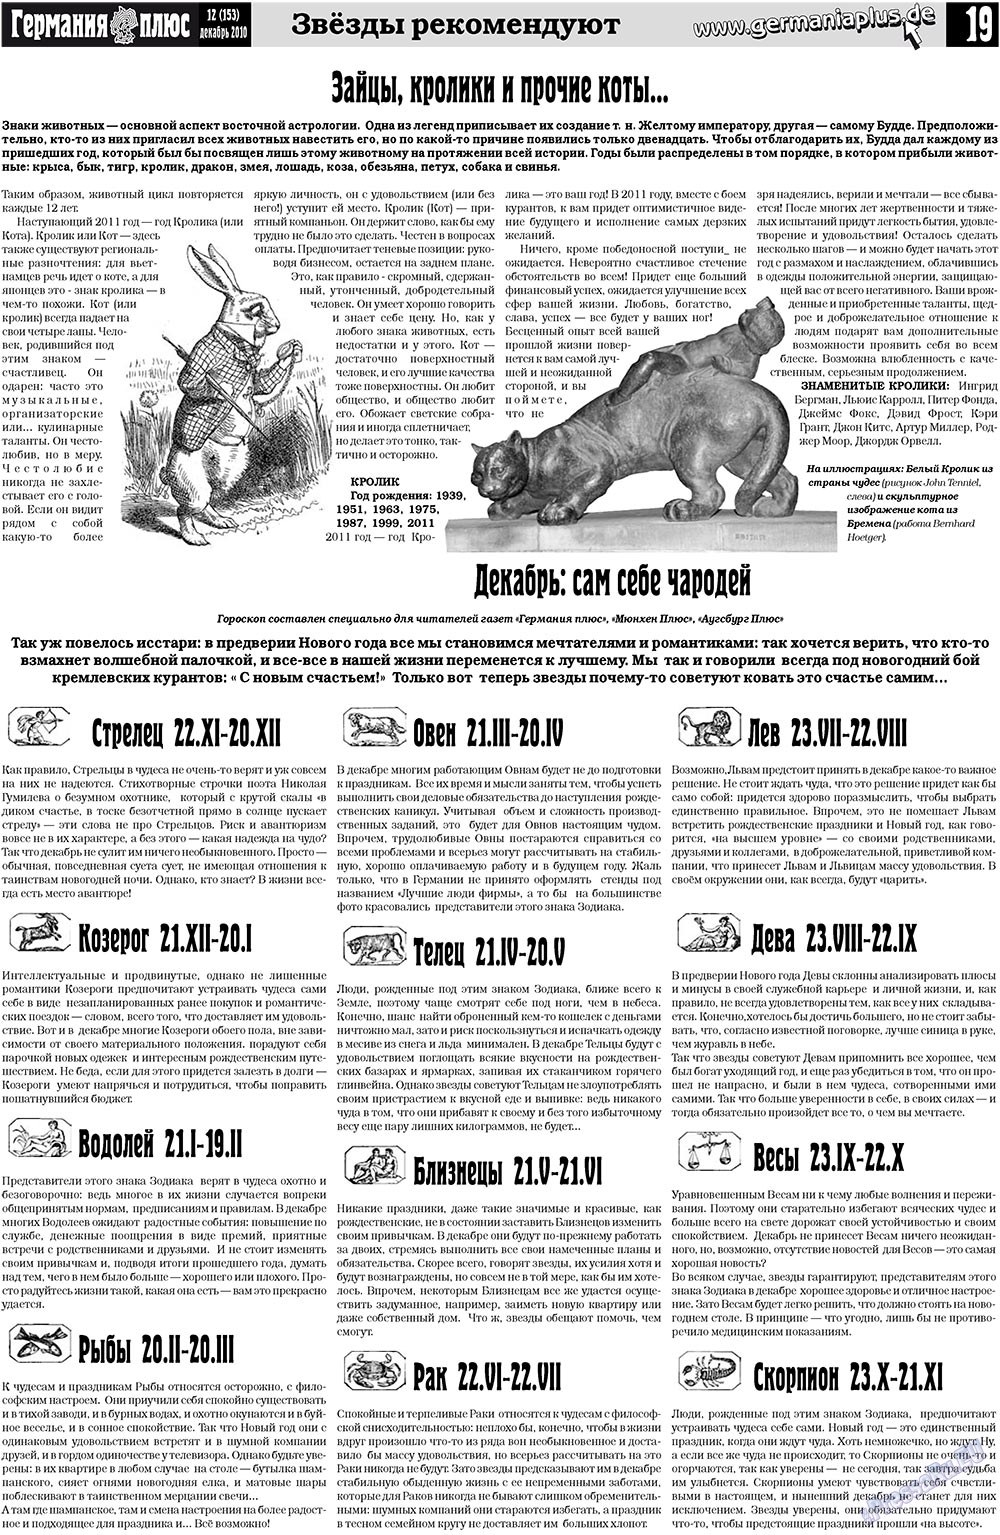 Германия плюс (газета). 2010 год, номер 12, стр. 19